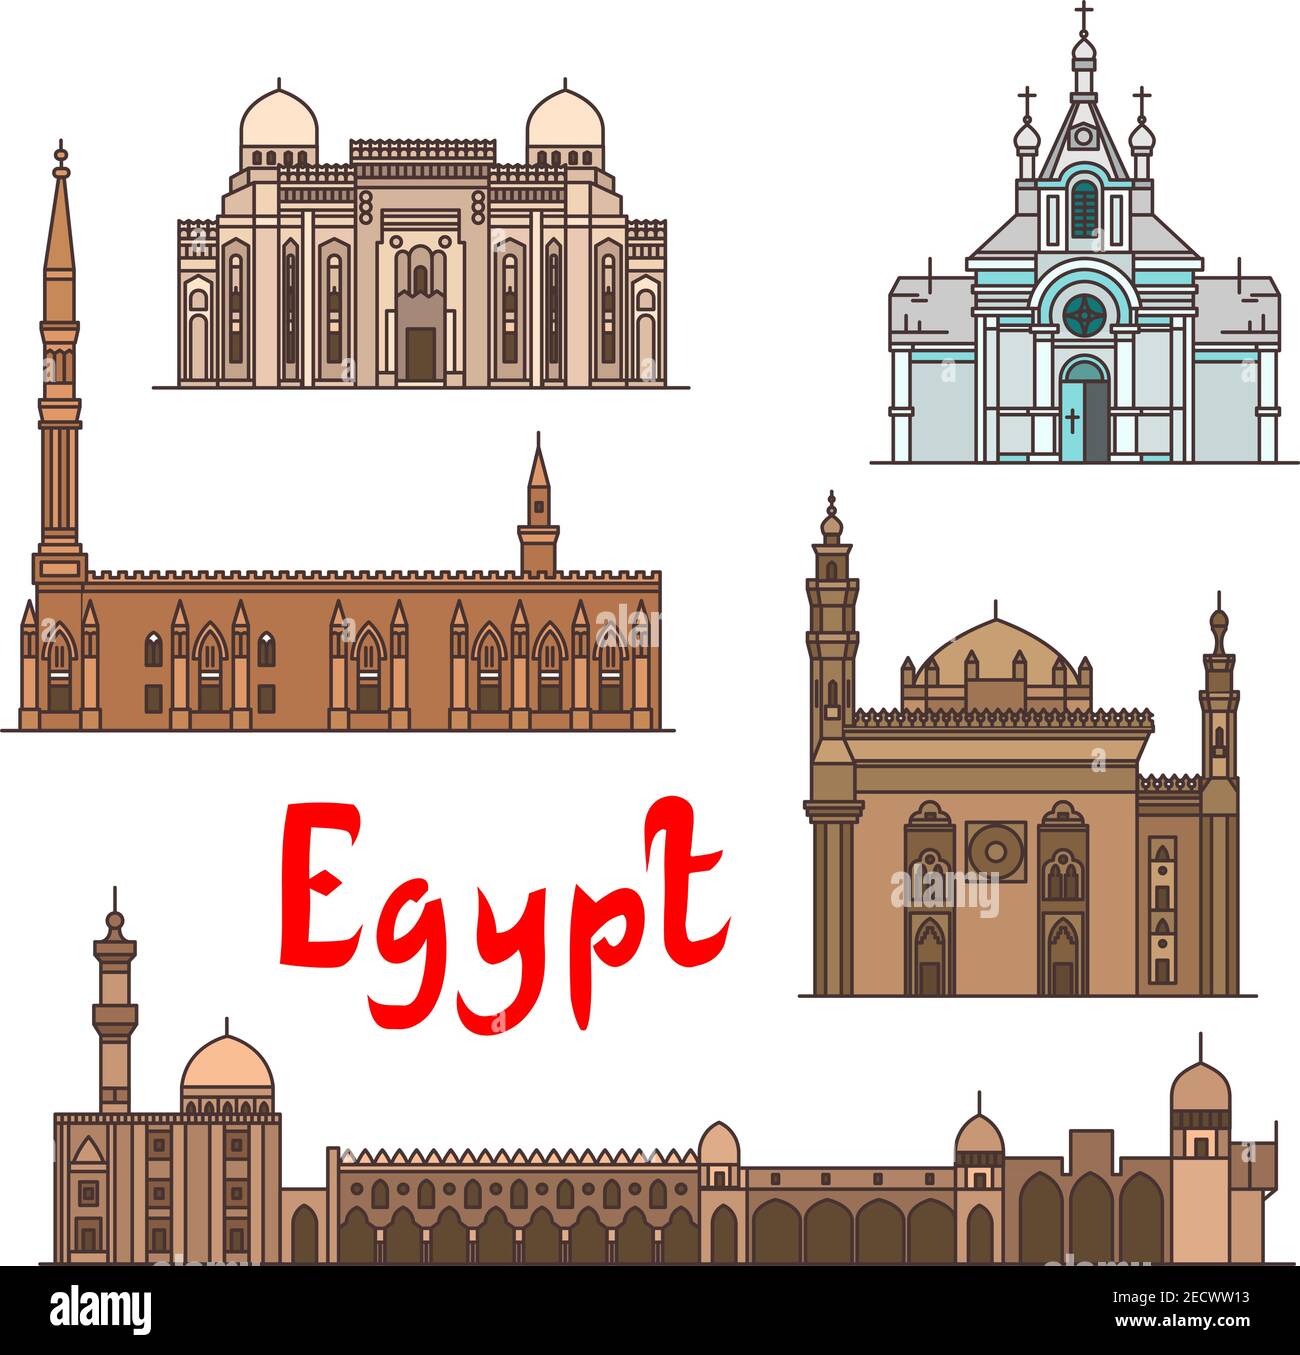 Ägypten historische Wahrzeichen und Sehenswürdigkeiten, berühmte Ausstellungsorte. Vektor detaillierte Ikonen der Kirche der Heiligen Jungfrau Maria, Abu al-Abbas al-Mursi, Al-Hussein, Al Stock Vektor